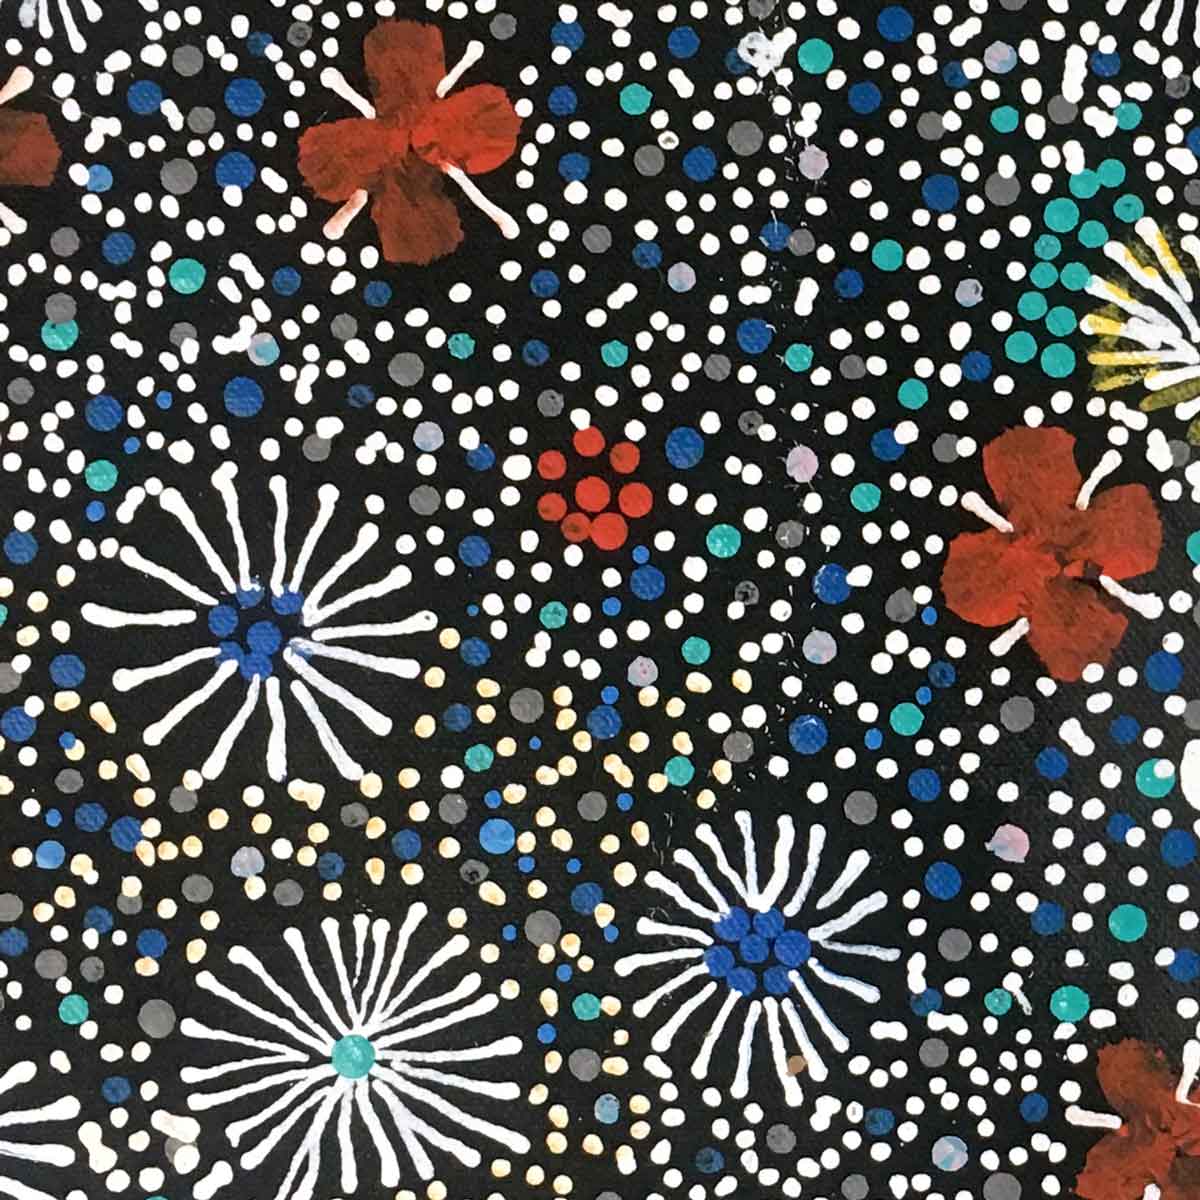 Centipede Story by Jilly Jones Petyarr. Australian Aboriginal Art.